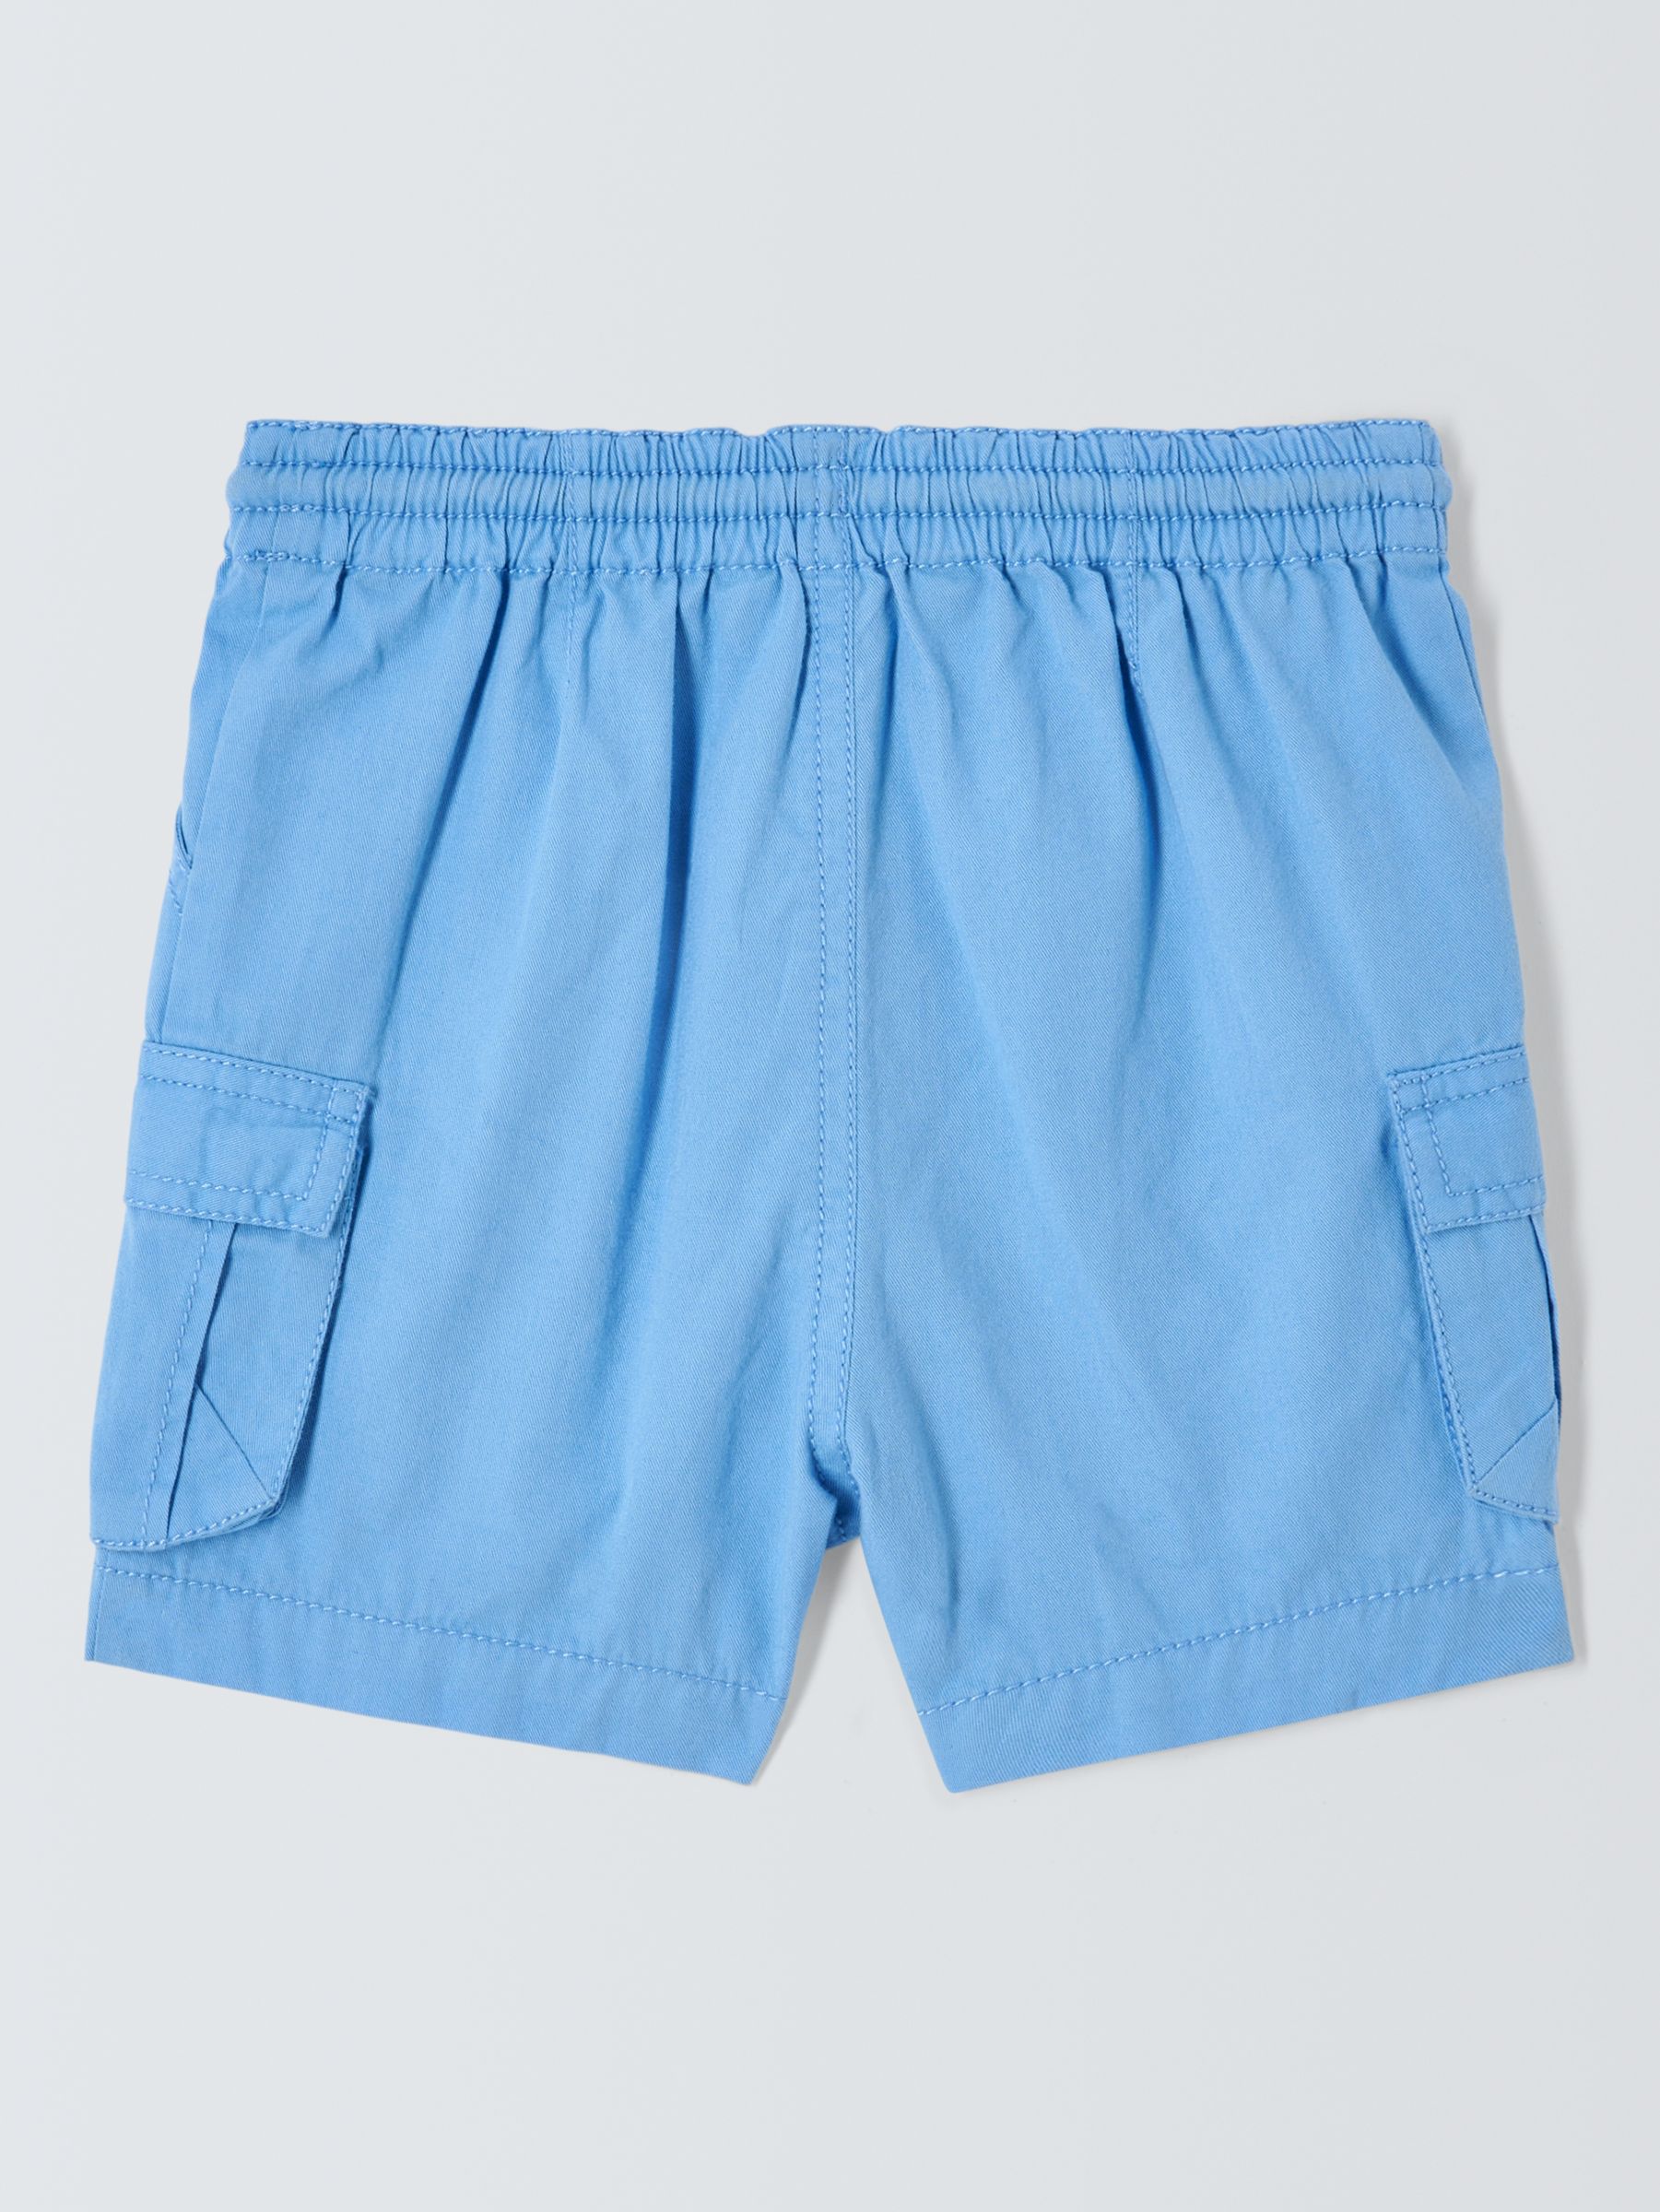 John Lewis Baby Cargo Drawstring Shorts, Blue, 3-4 years